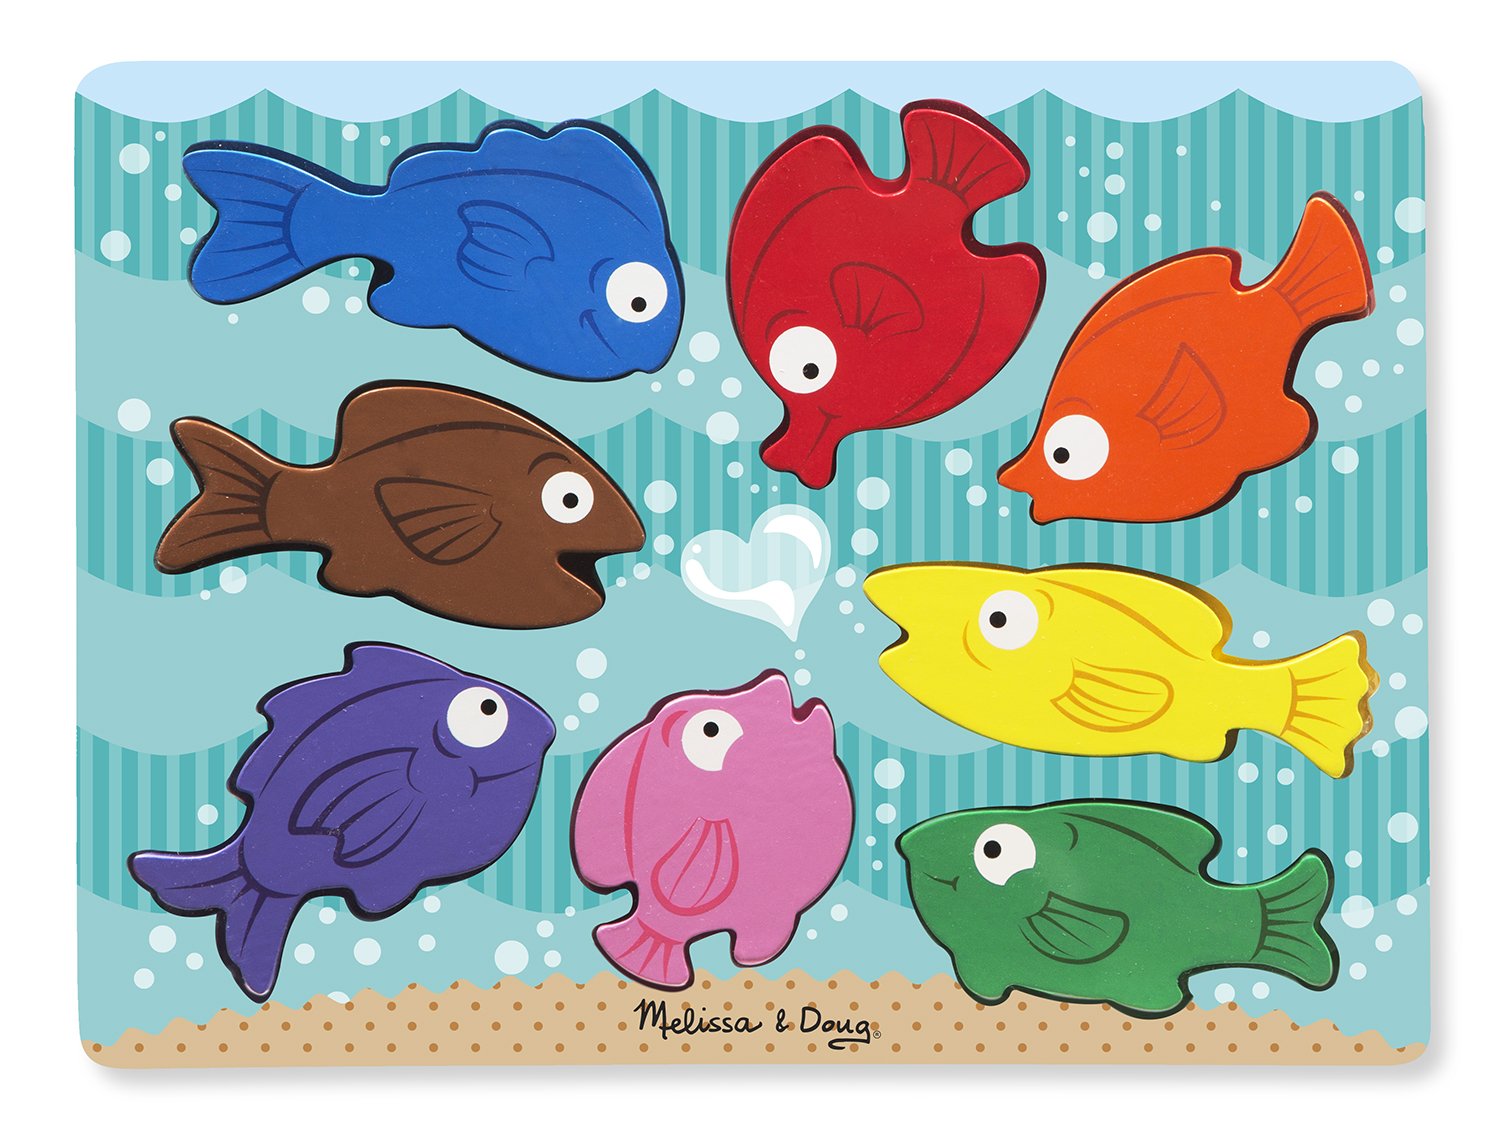 Melissa & Doug 19003 – Massigen Wood Puzzle Colourful Fish, 8 Pieces